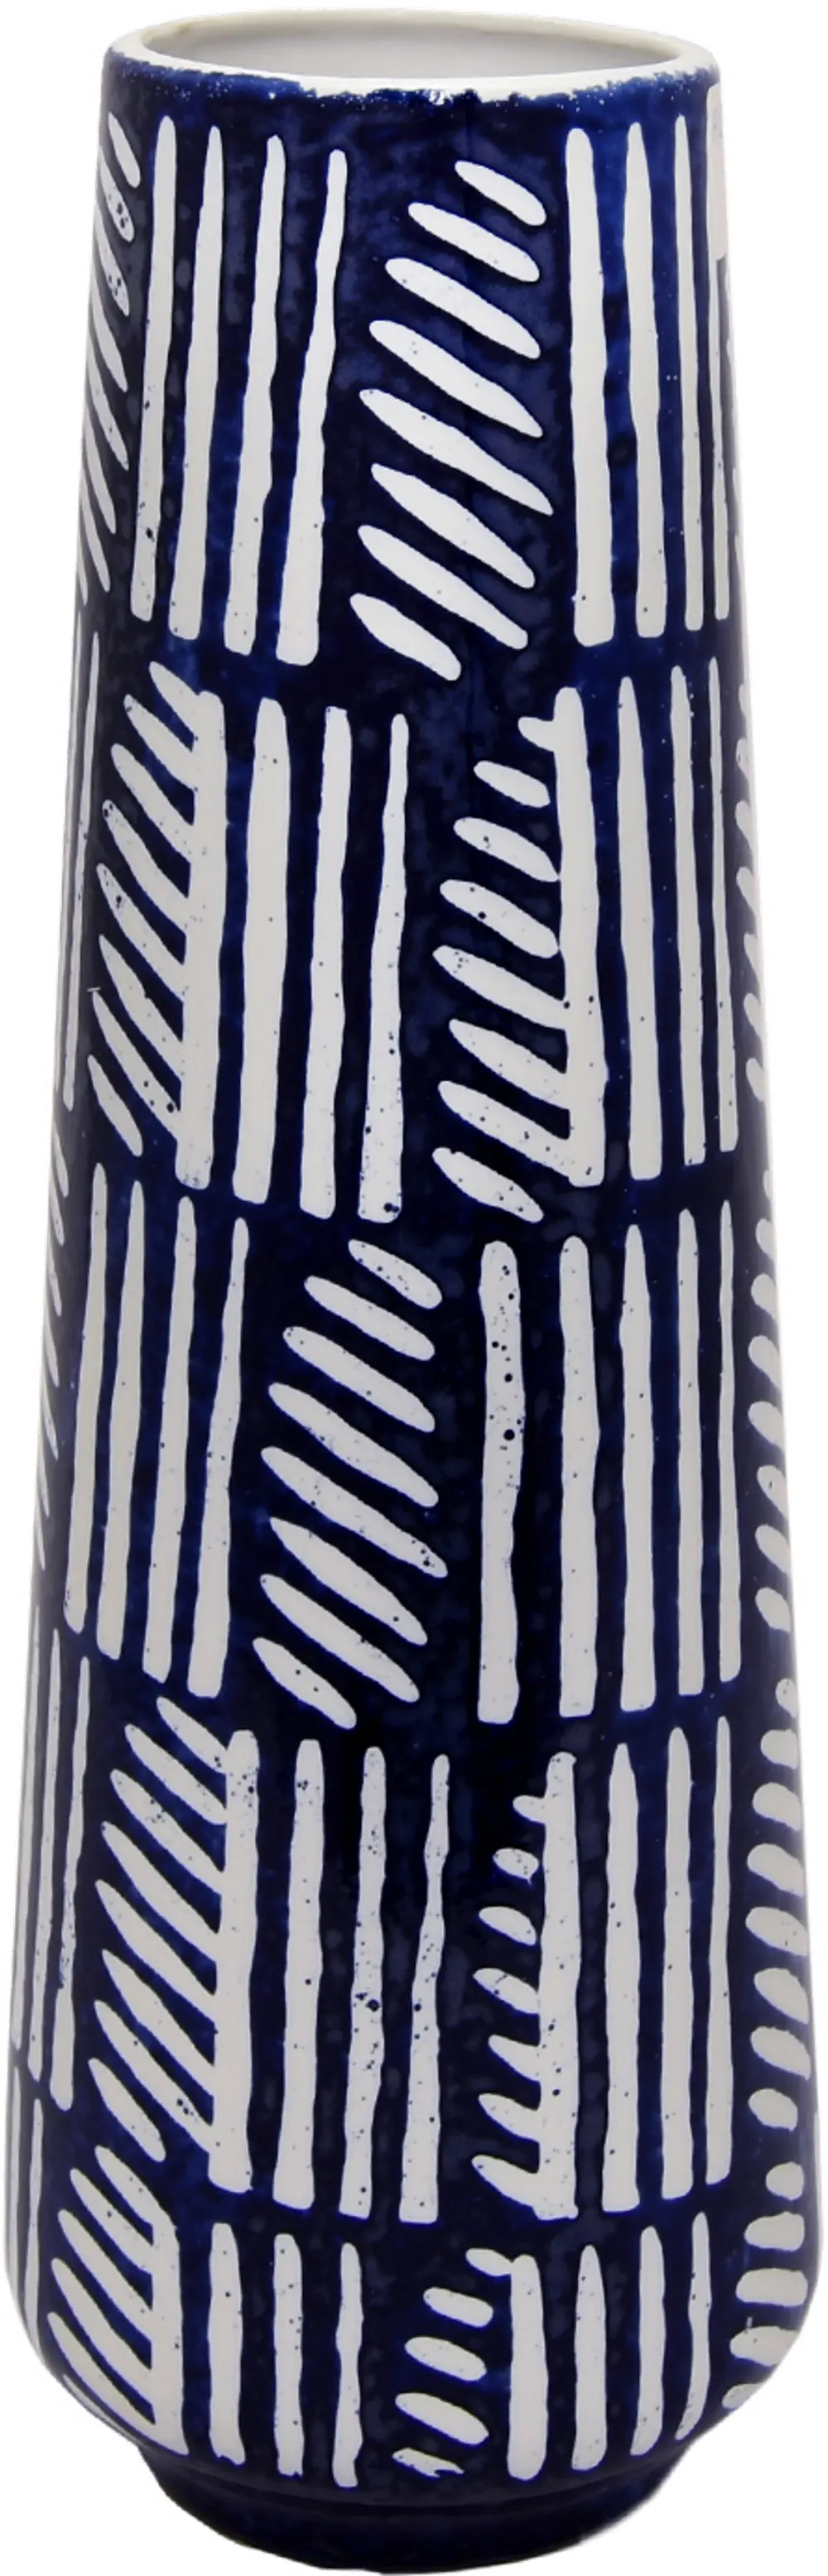 Navy Blue and White Ceramic Vase-1